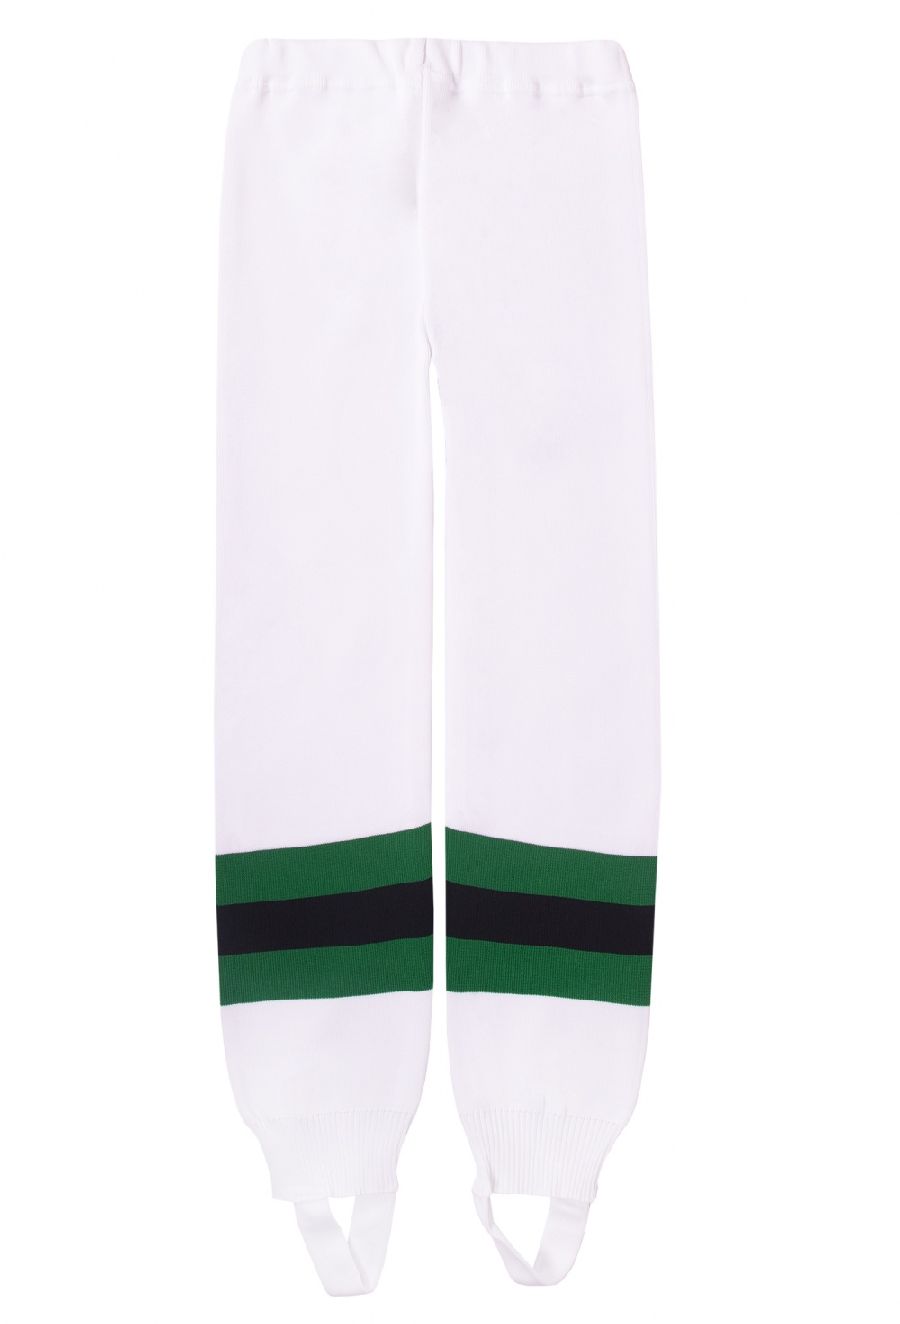 картинка Рейтузы хоккейные вязаные белые (зеленые,черные полосы) от магазина LutchShop.ru